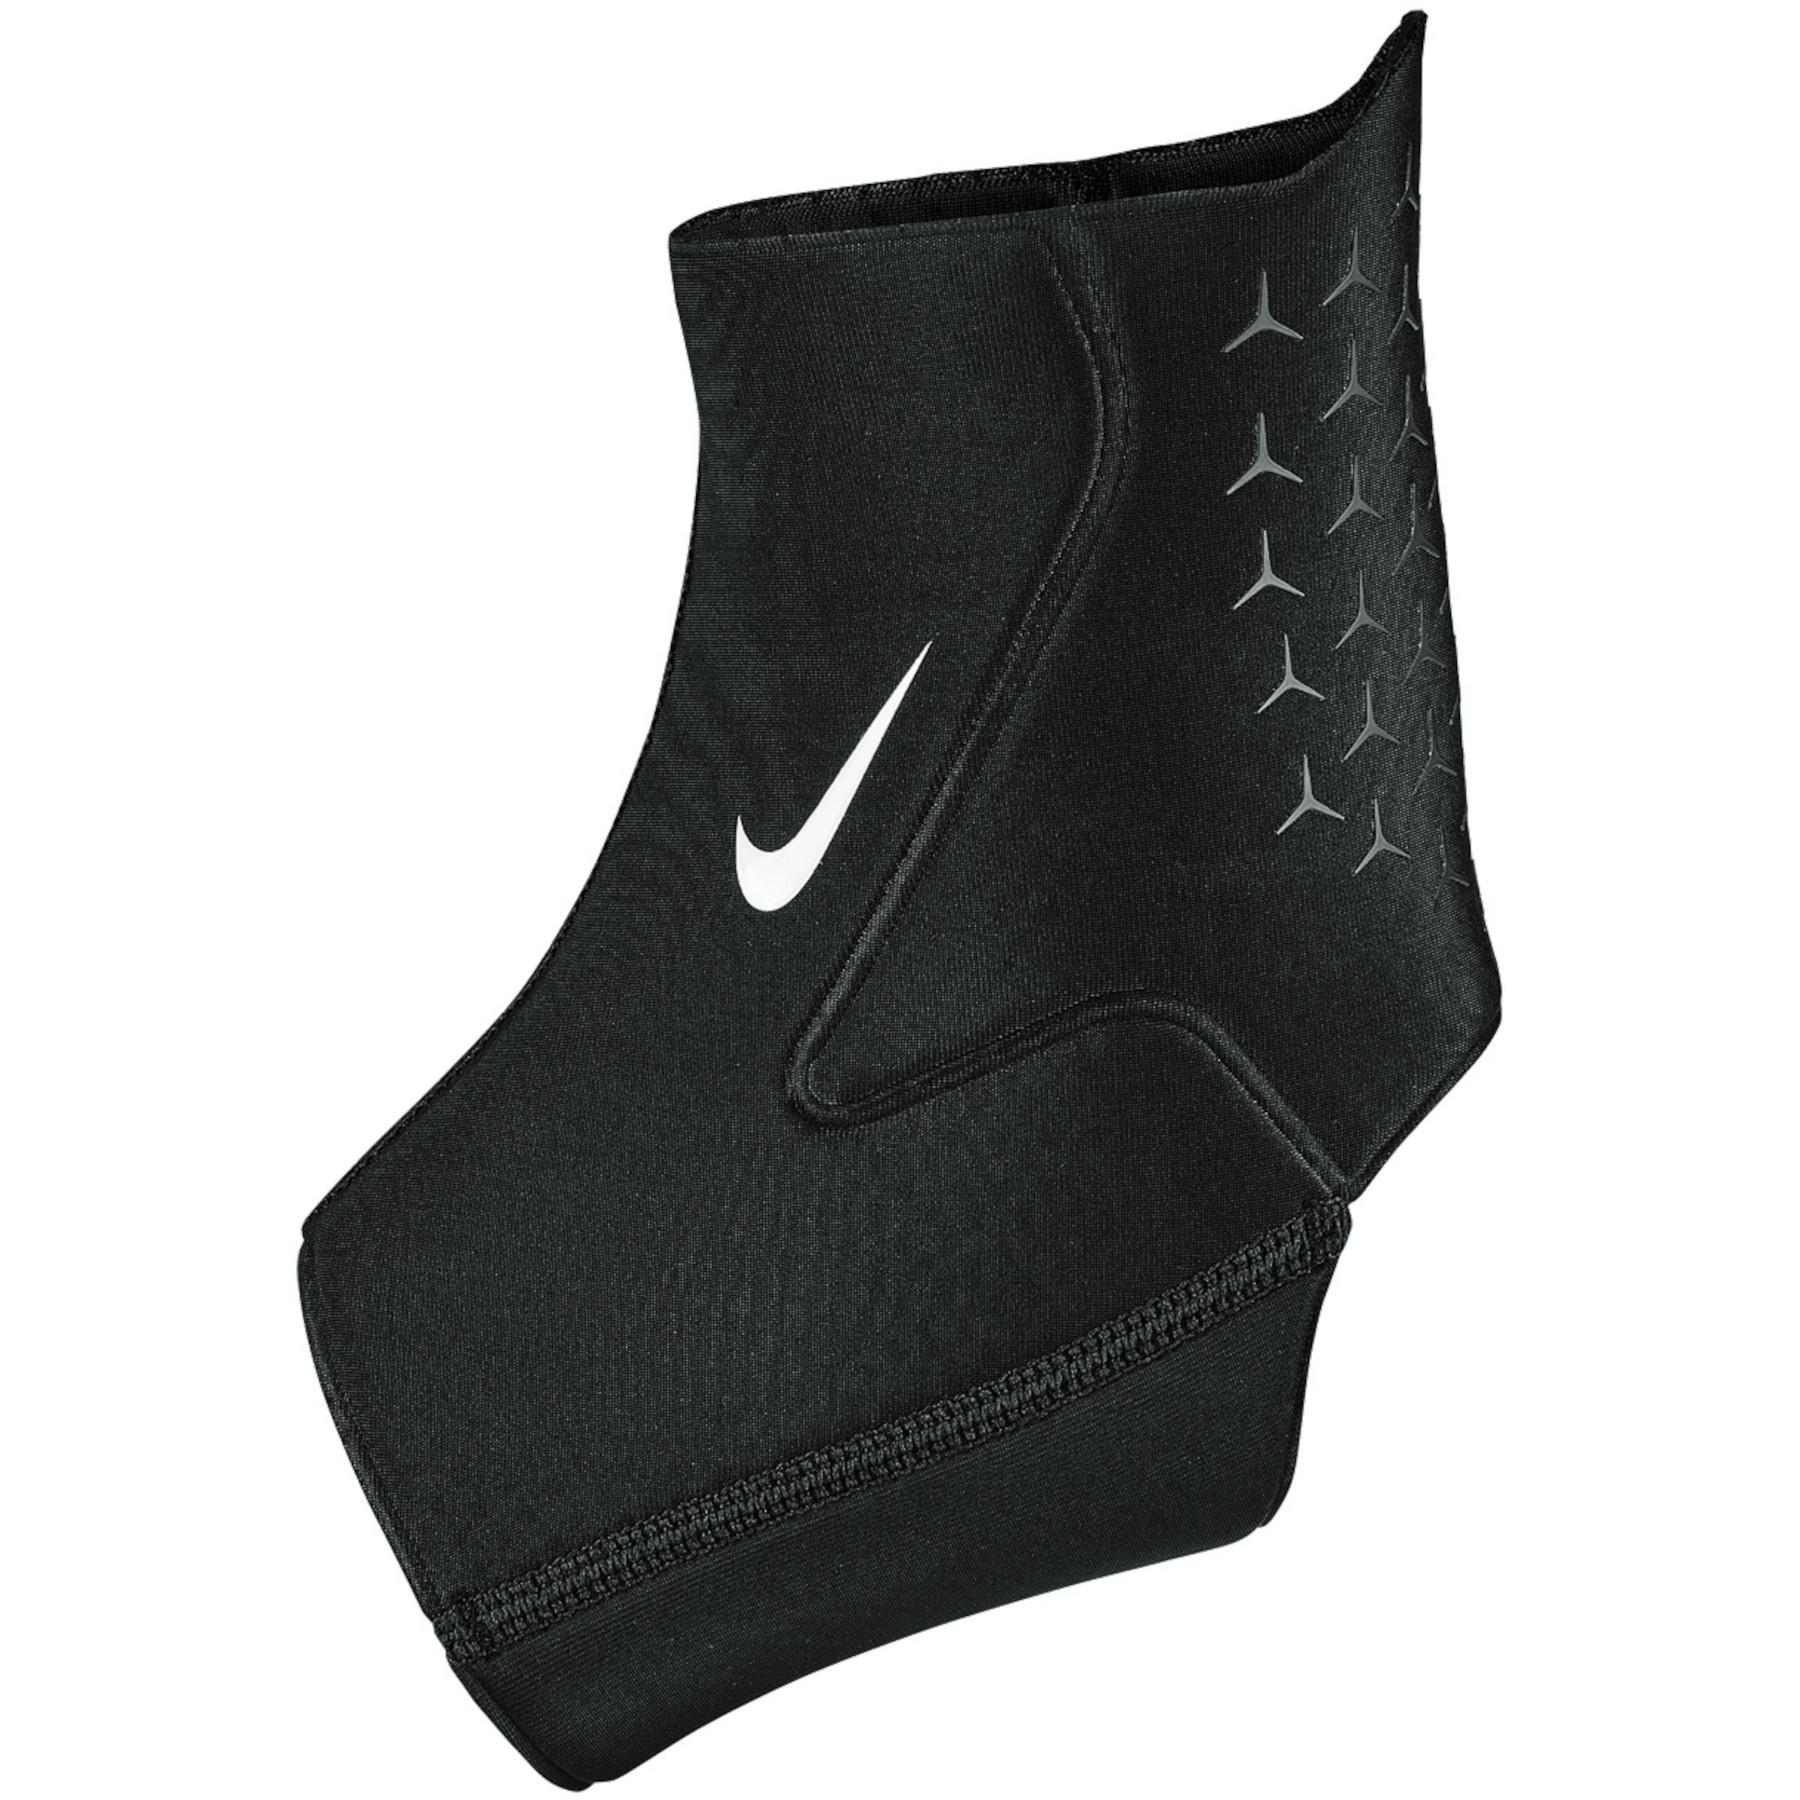 Image of Nike Pro Ankle Sleeve 3.0 - black/white 010